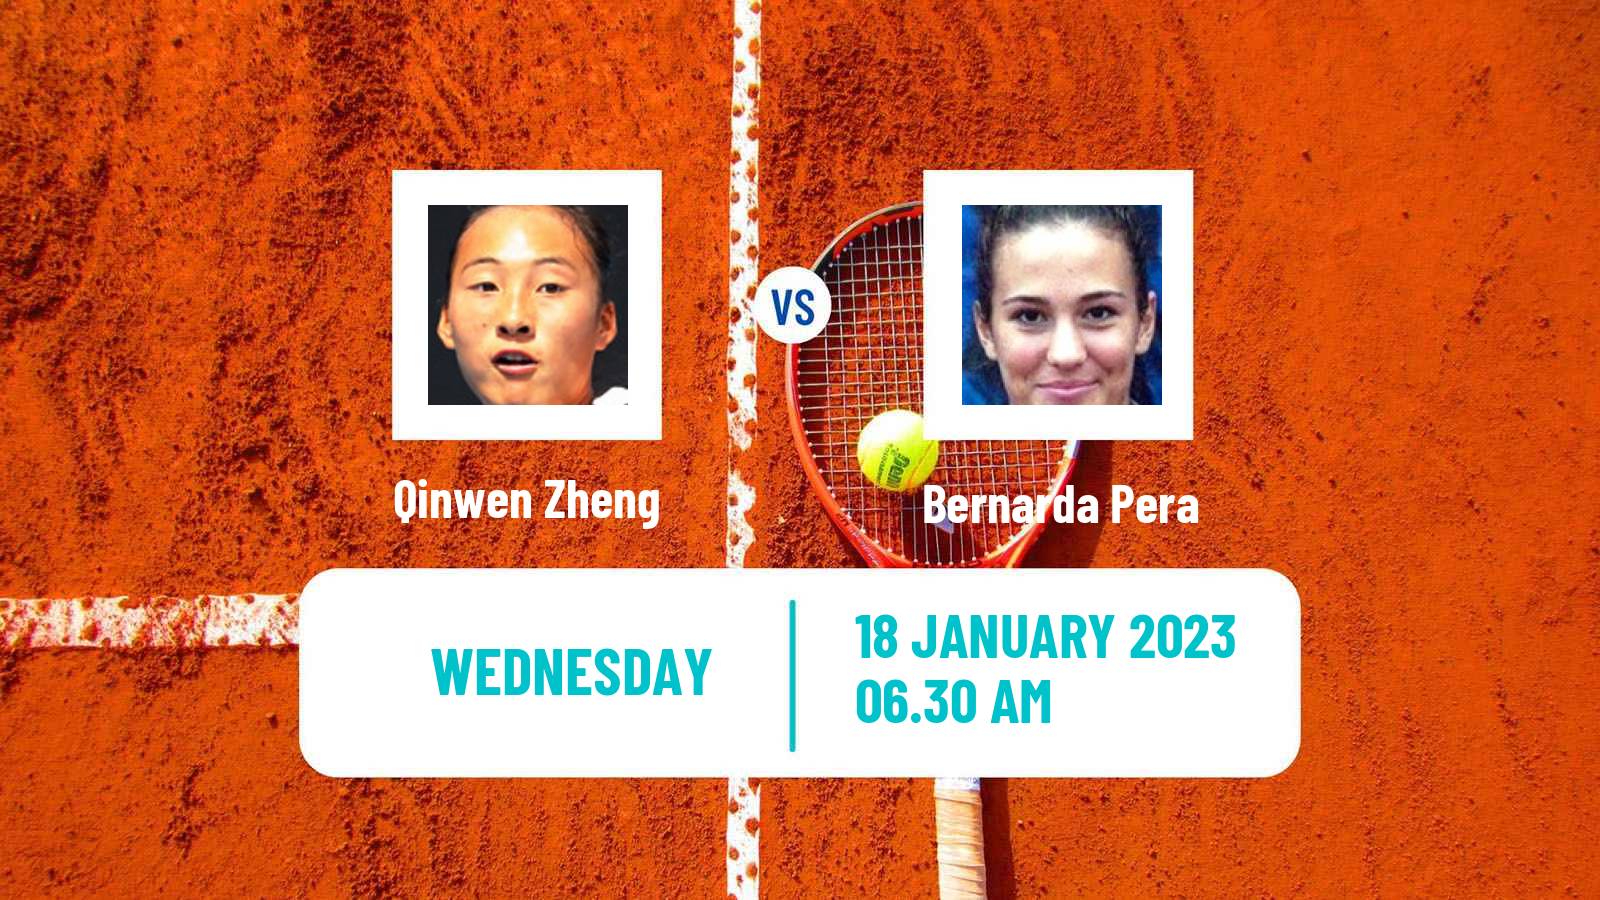 Tennis WTA Australian Open Qinwen Zheng - Bernarda Pera